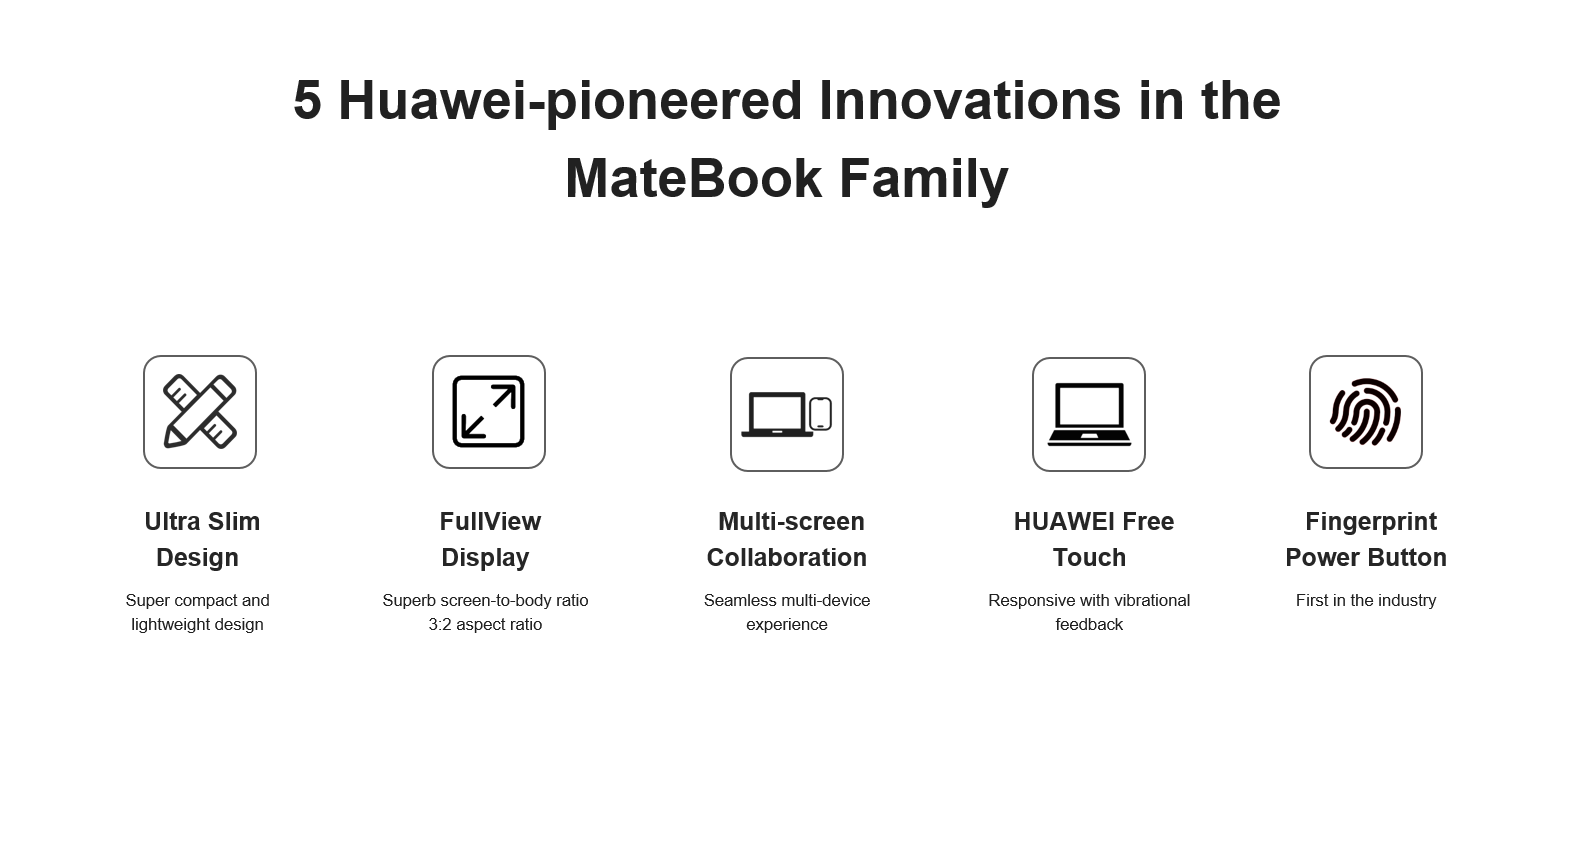 Huawei Pioneered Innovation | Huawei | การเดินทางกว่า 5 ปีของหัวเว่ย จากจุดเริ่มต้นสู่ความล้ำหน้าทุกเทคโนโลยี  พัฒนามาอย่างต่อเนื่องจนถึง HUAWEI MateBook 14 ในวันนี้